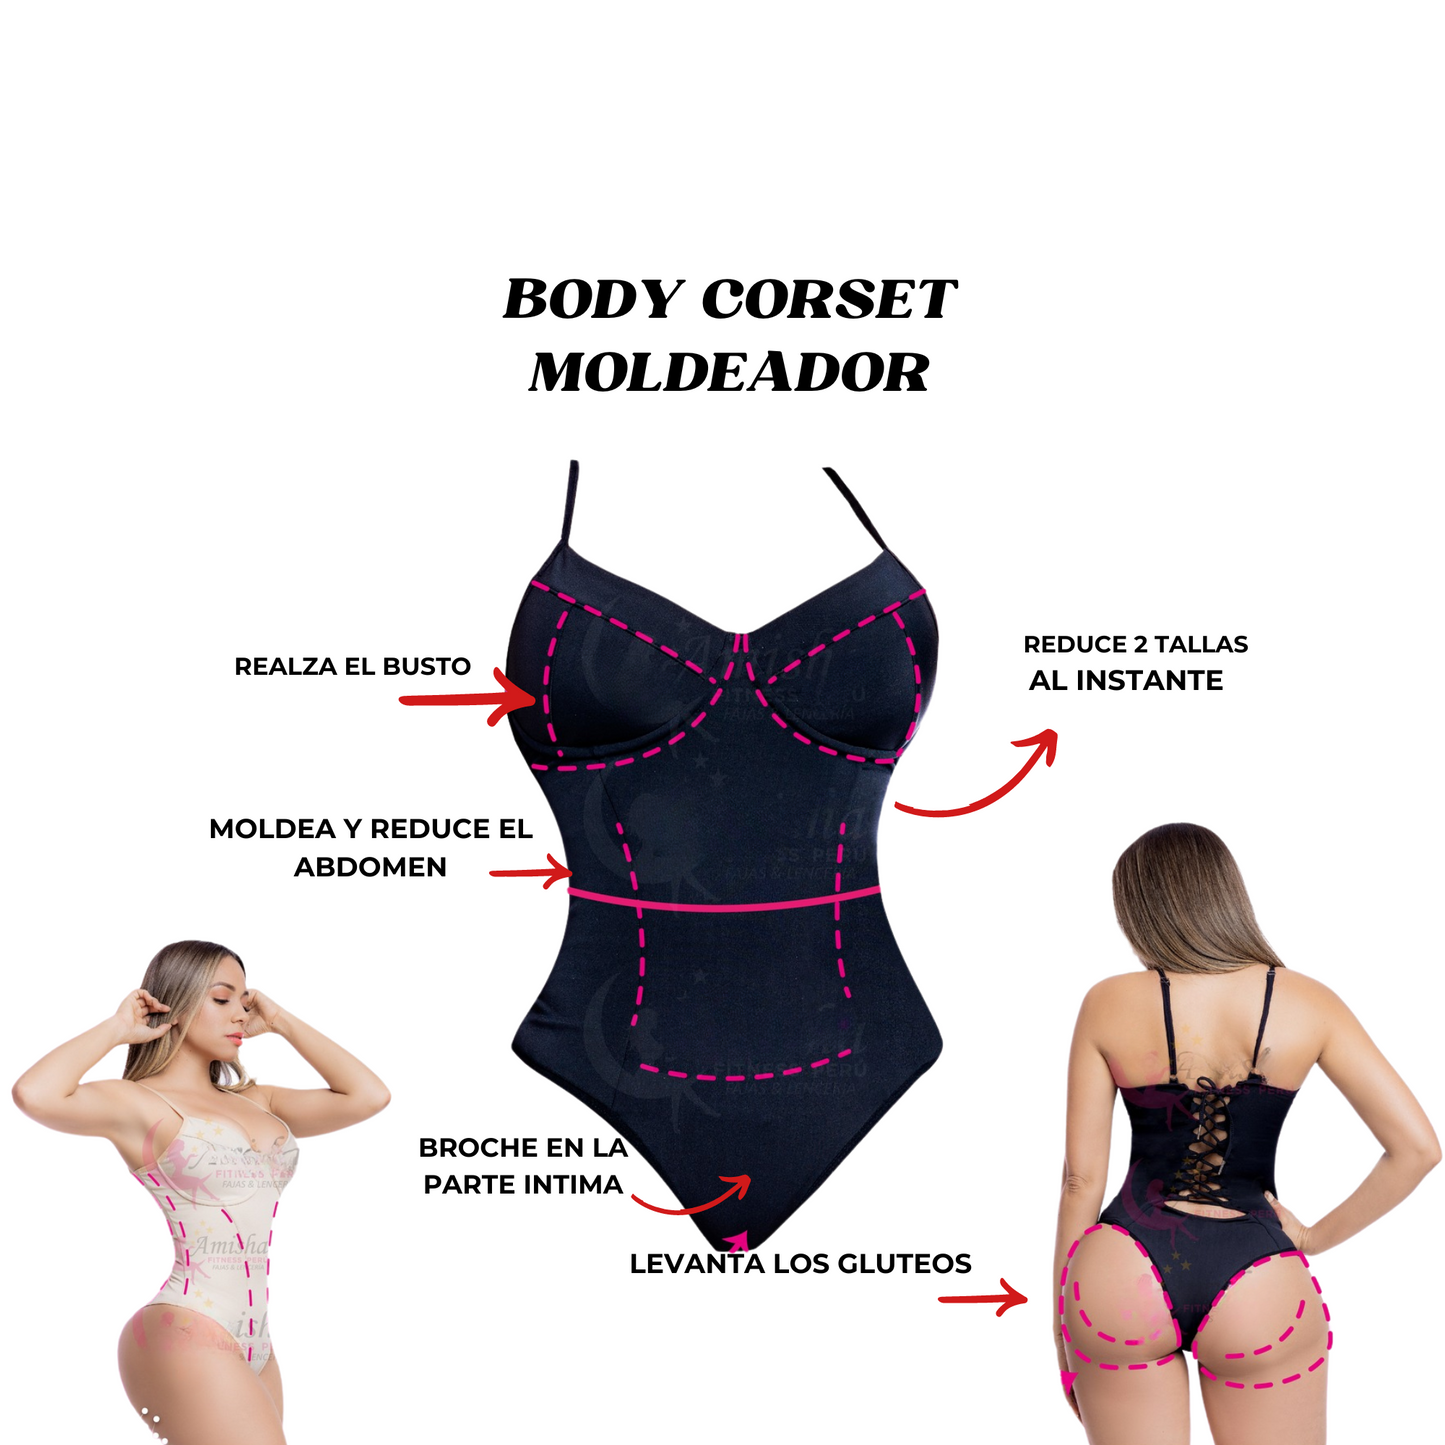 Body corset moldeador